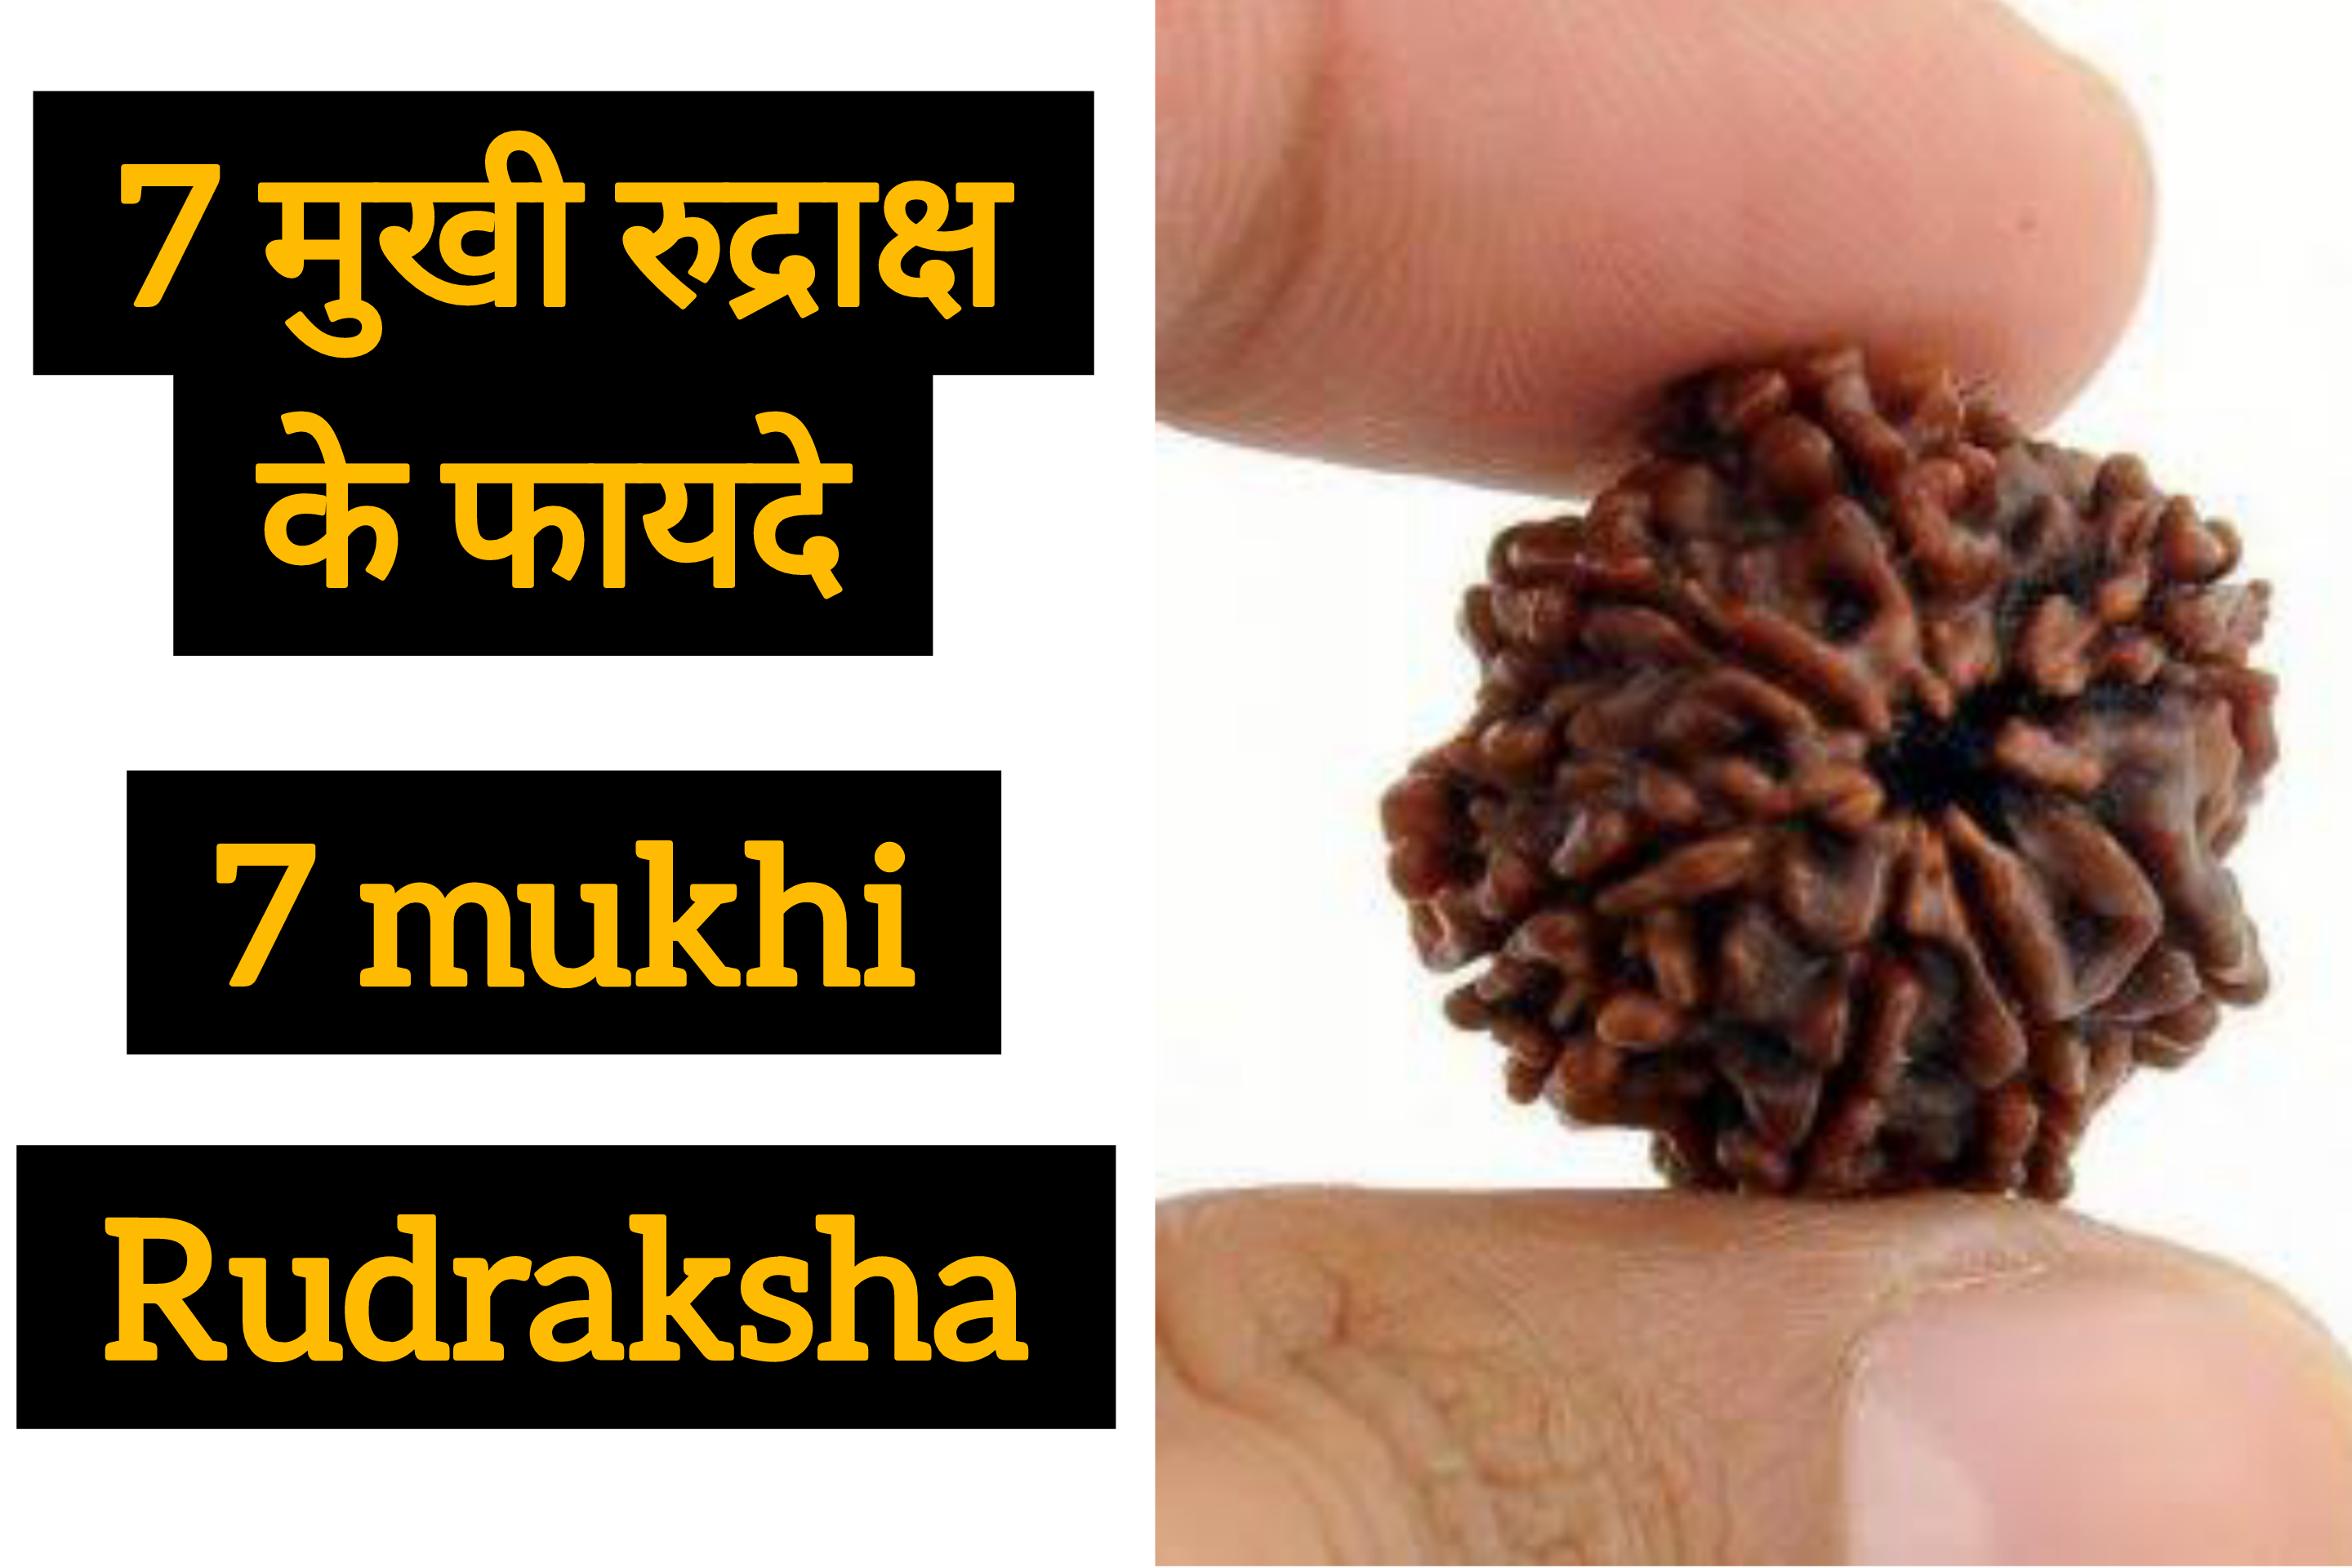 7 mukhi rudraksha ke fayde in hindi